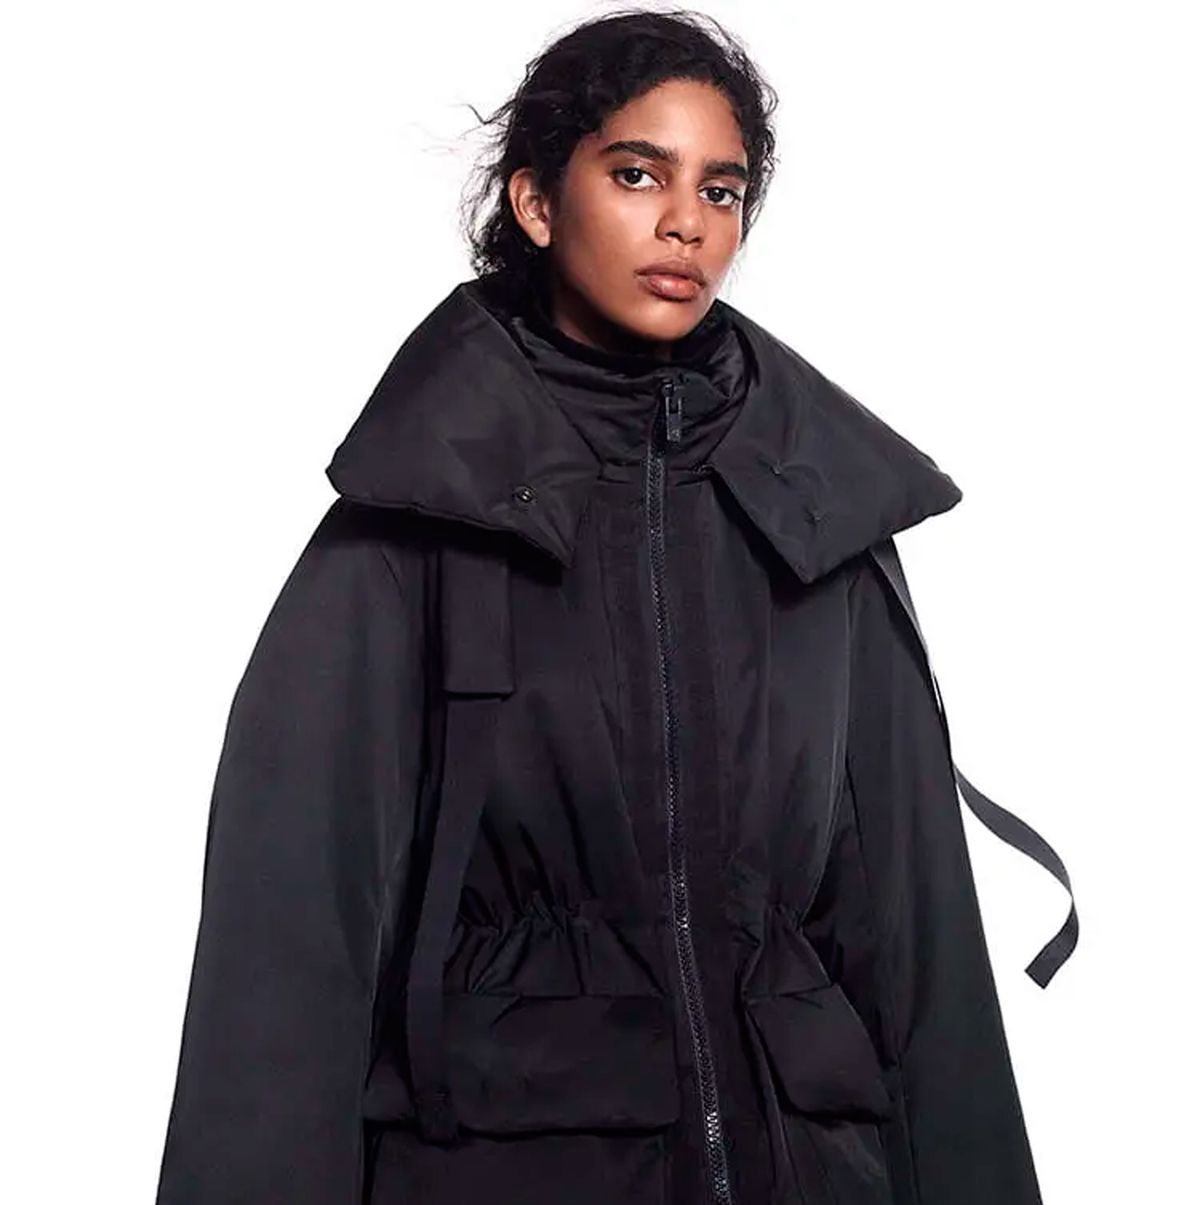 Uniqlo y su mejor colección de abrigos,trajes,básicos:Jil Sander